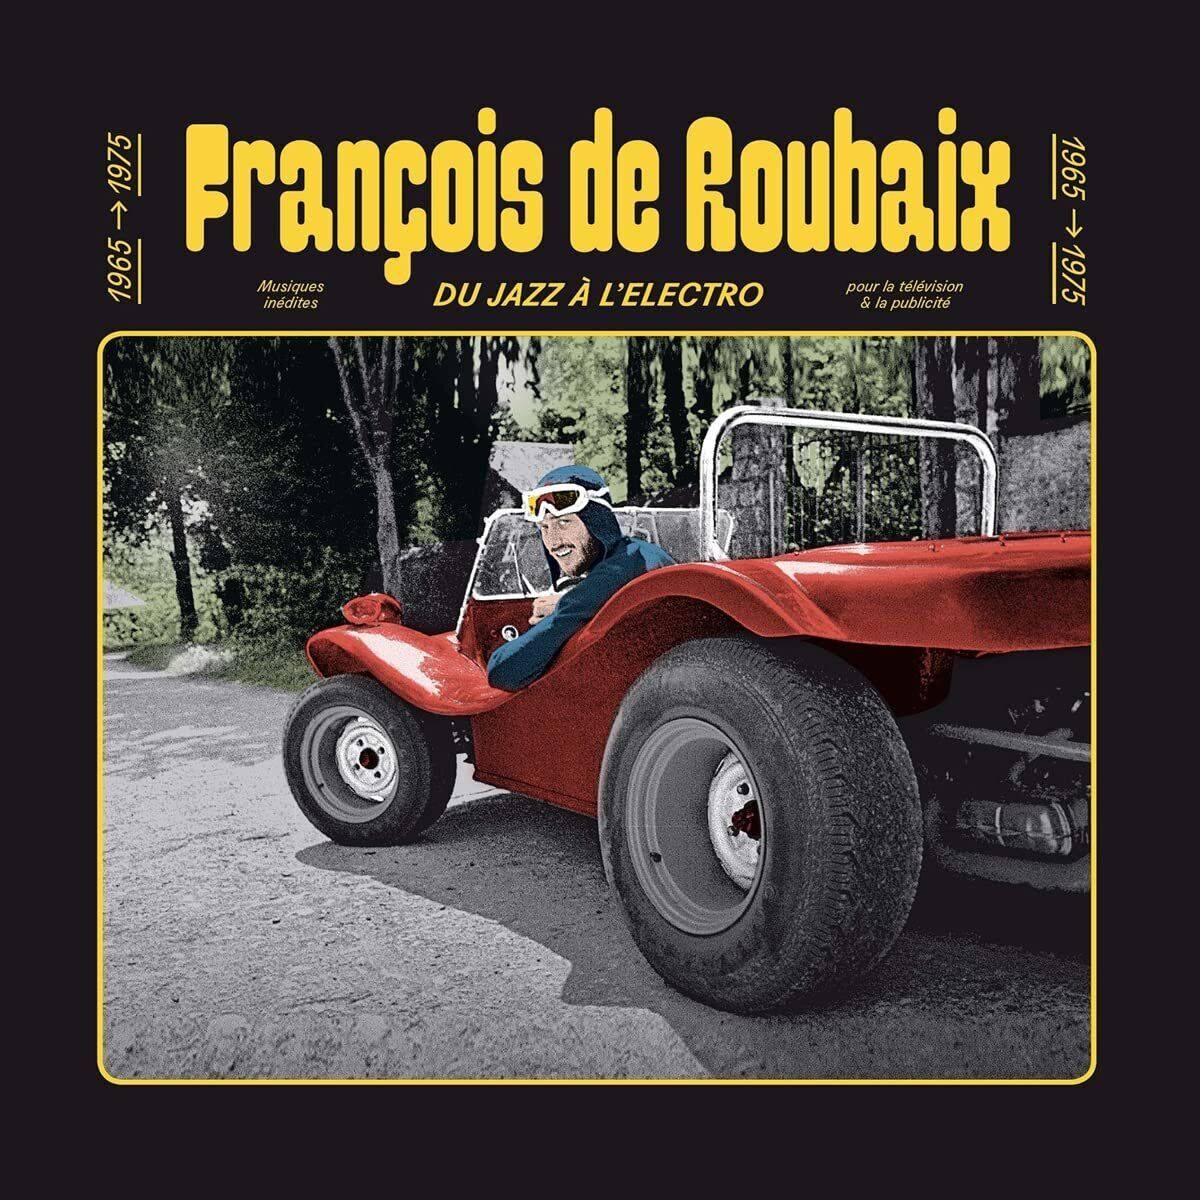 Francois-de-Roubaix-–-Du-Jazz-a-LElectro-1965-1975 François de Roubaix – Du Jazz à L'Electro 1965-1975